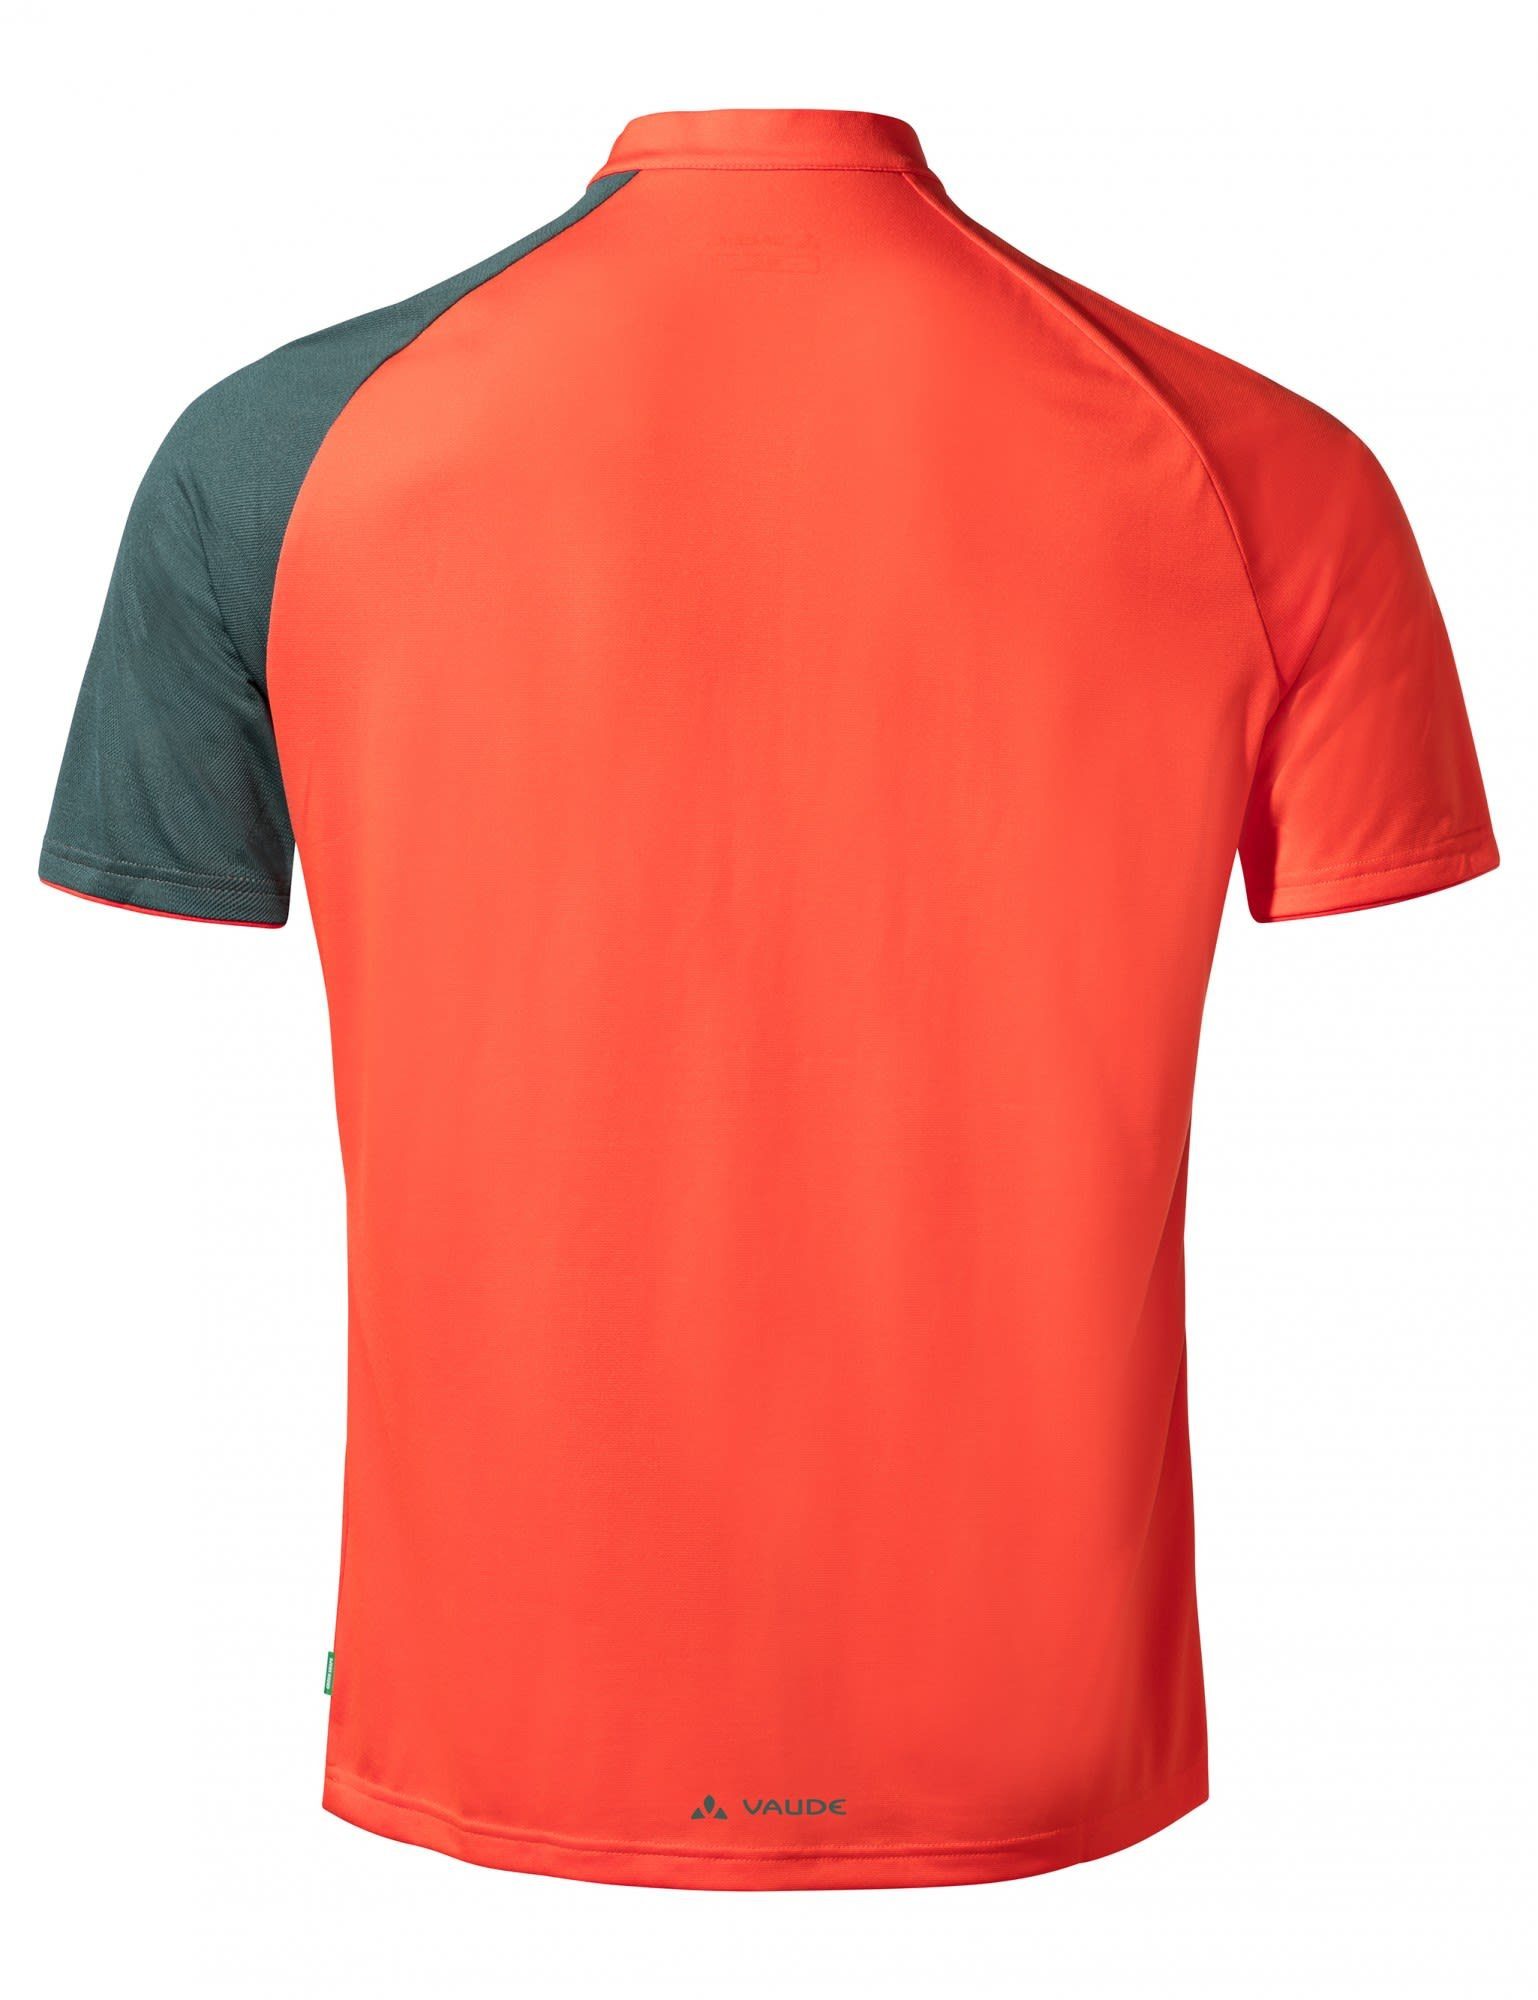 Pro T-Shirt Red Vaude Herren Glowing Altissimo VAUDE Mens Shirt